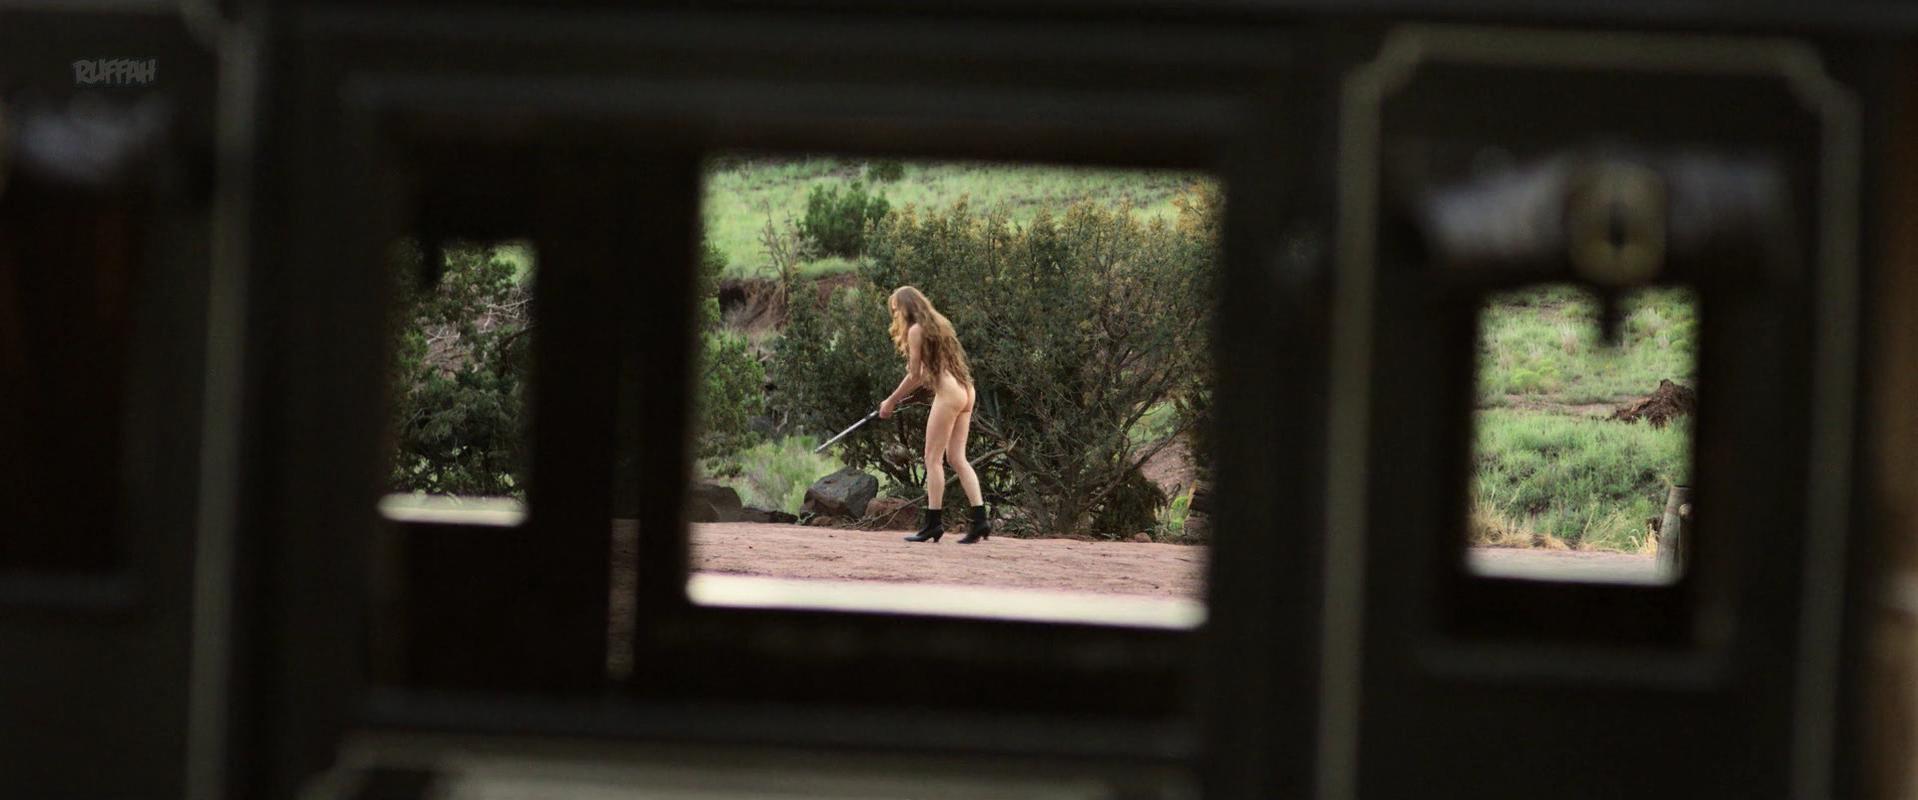 Christiane seidel naked